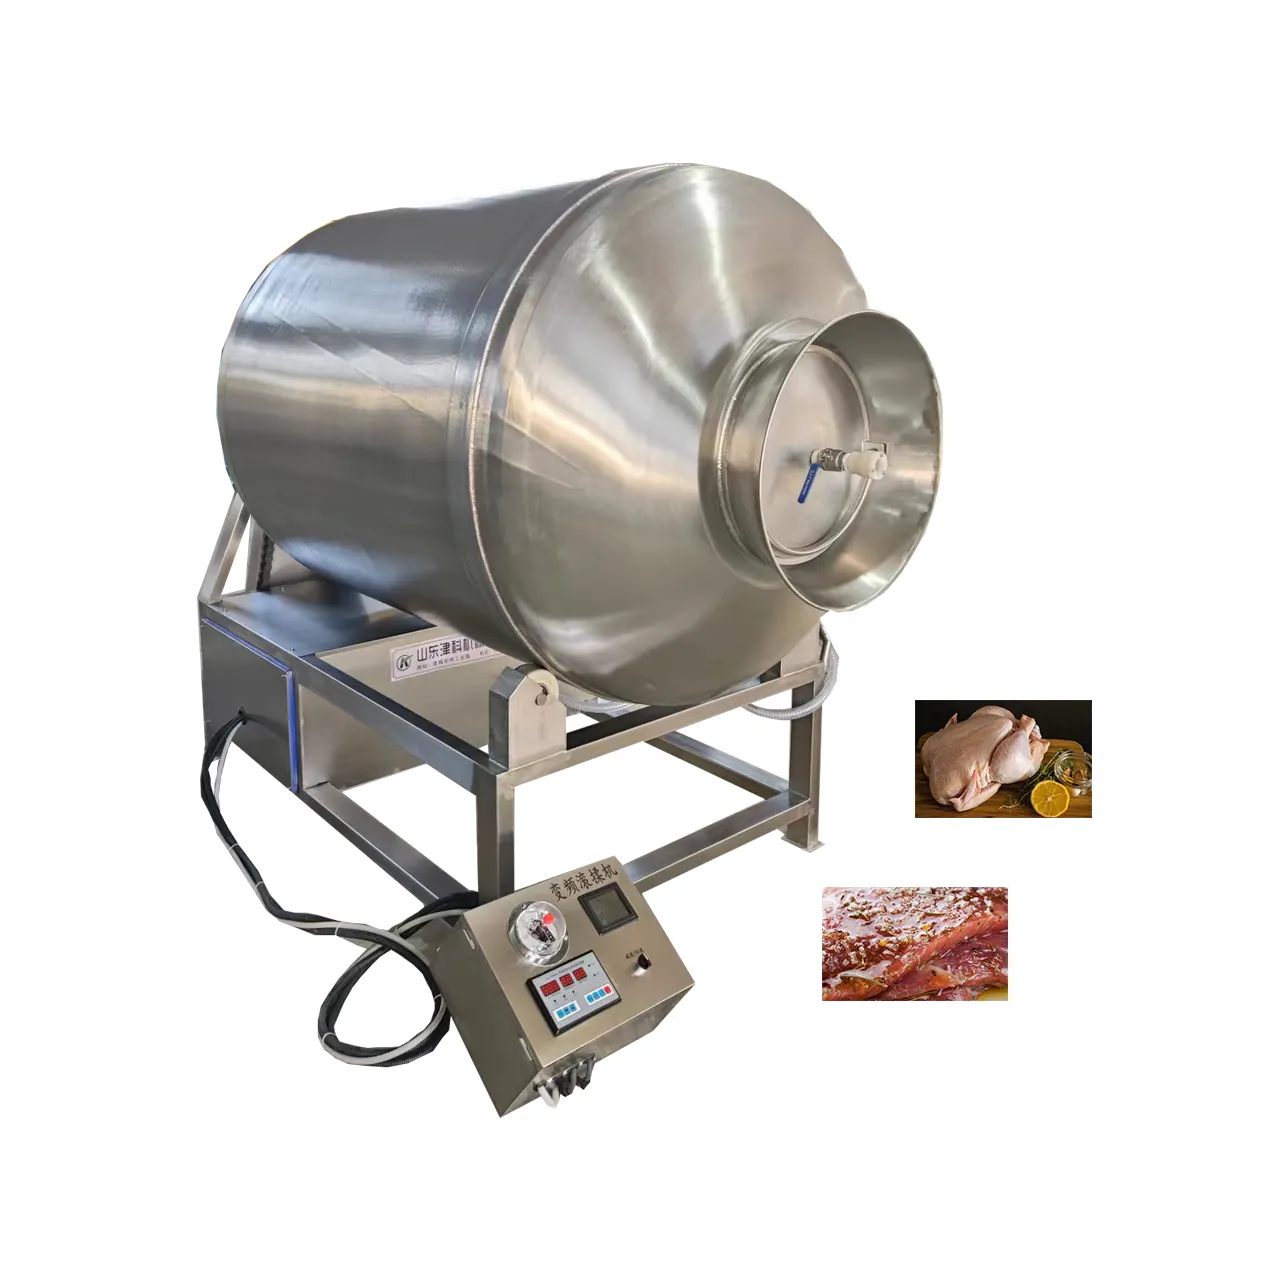 औद्योगिक चिकन वैक्यूम कप/चिकन marinating वैक्यूम मांस गिलास मांस गिलास मशीन